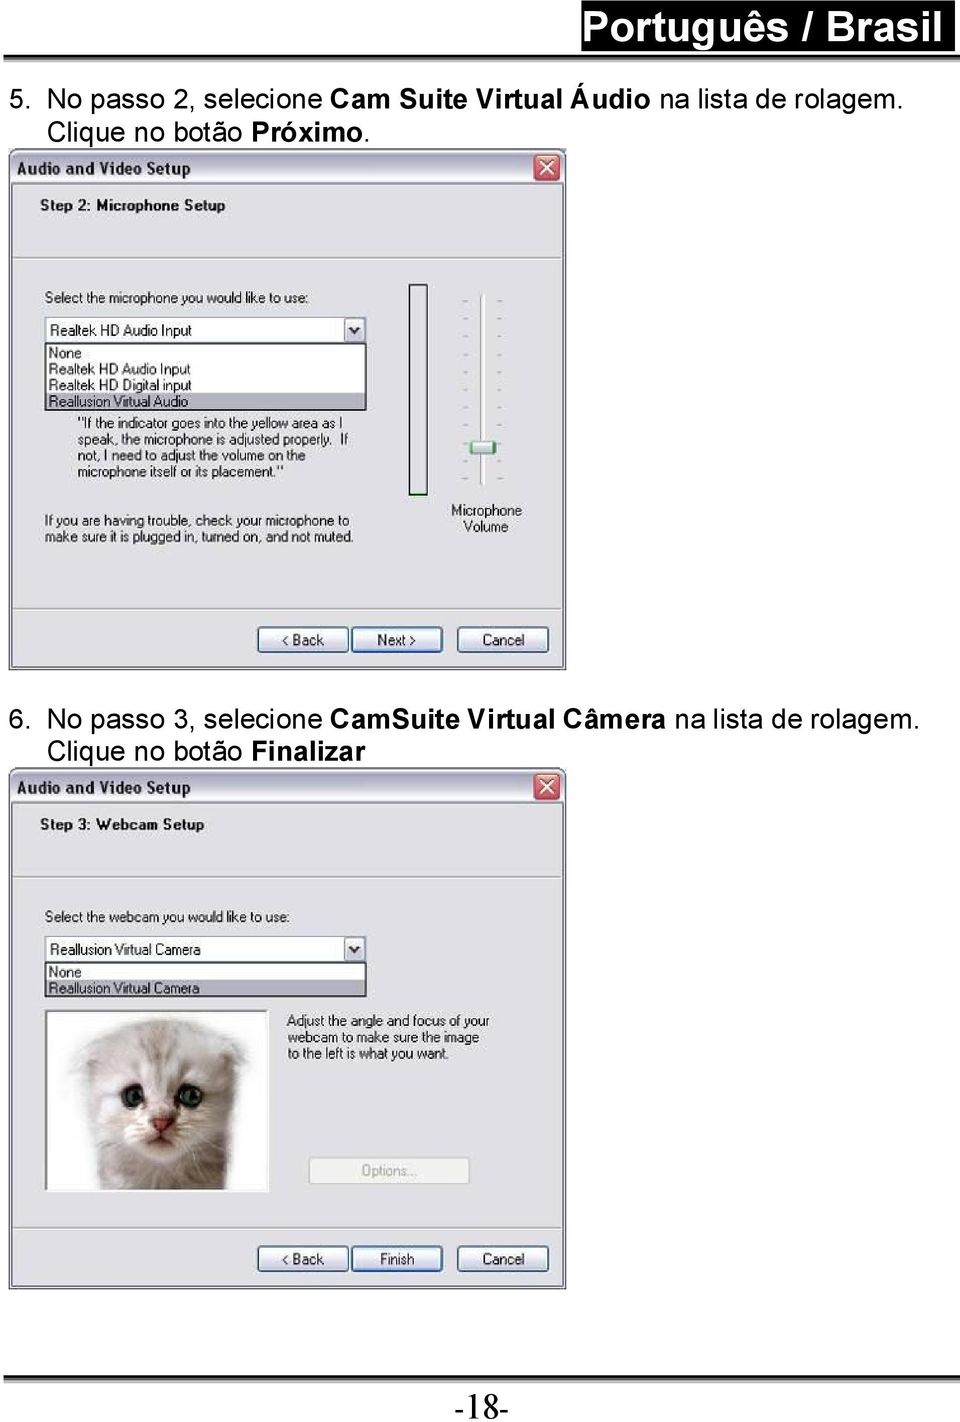 No passo 3, selecione CamSuite Virtual Câmera na